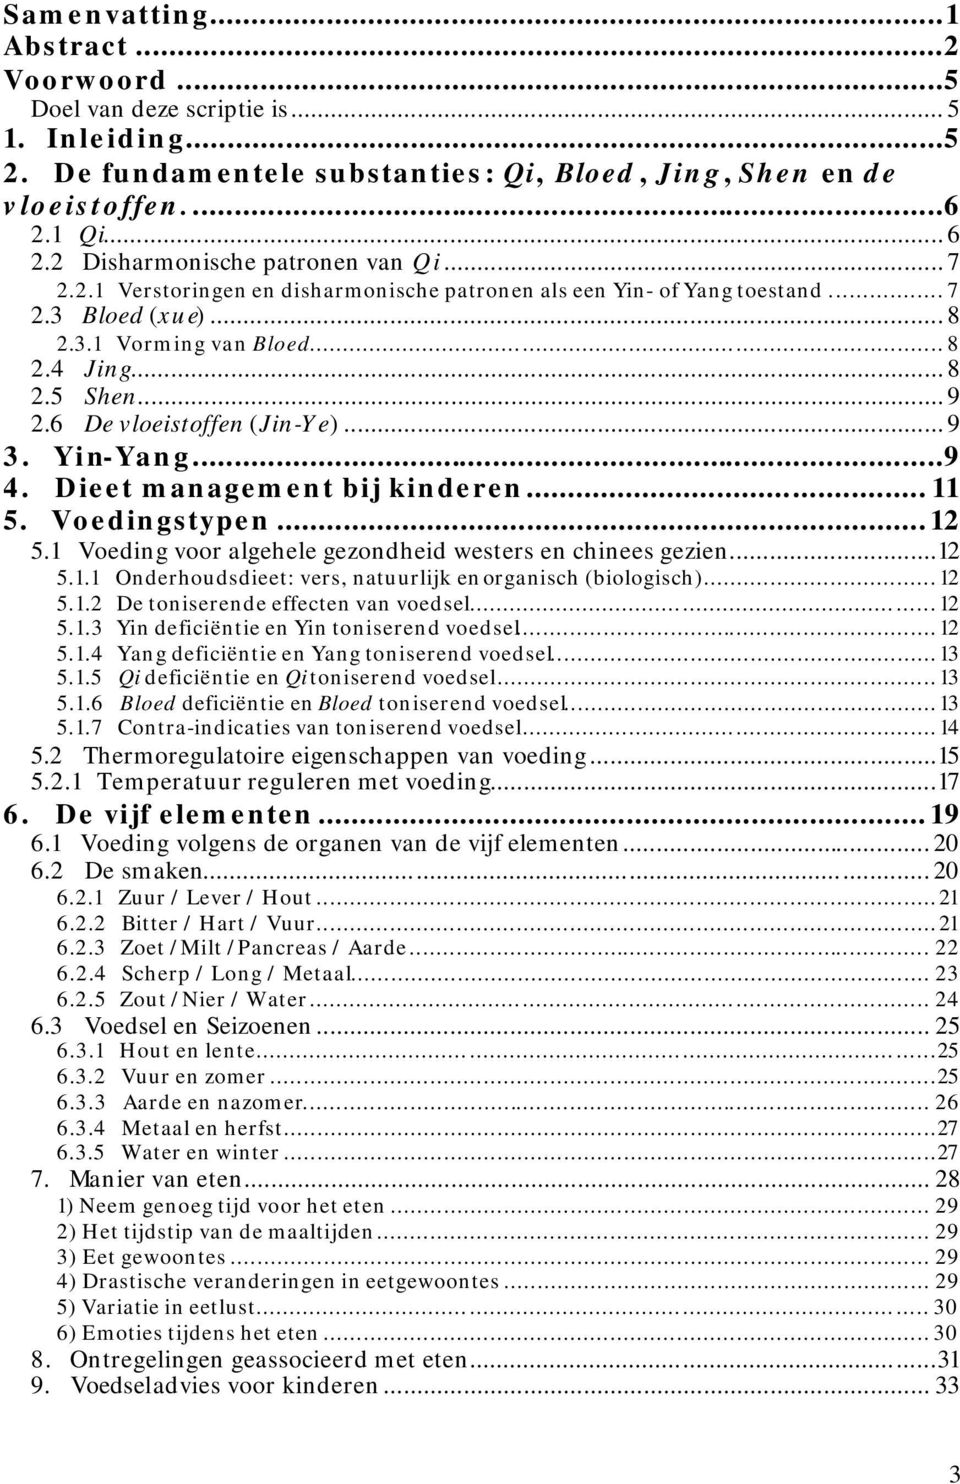 6 De vloeistoffen (Jin-Ye)... 9 3. Yin-Yang...9 4. Dieet management bij kinderen... 11 5. Voedingstypen...12 5.1 Voeding voor algehele gezondheid westers en chinees gezien...12 5.1.1 Onderhoudsdieet: vers, natuurlijk en organisch (biologisch).